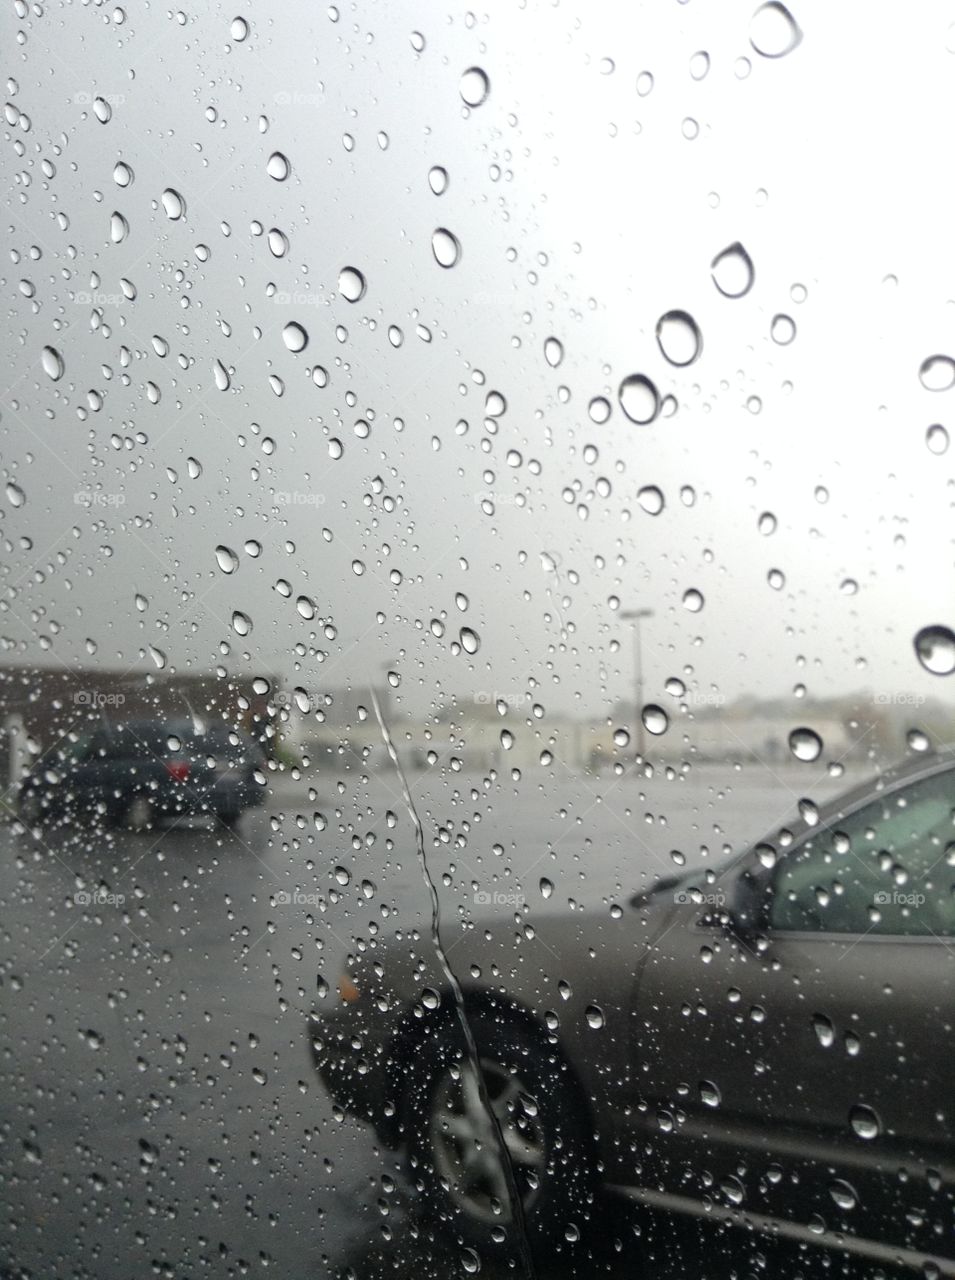 rain on a window taken in a parking lot